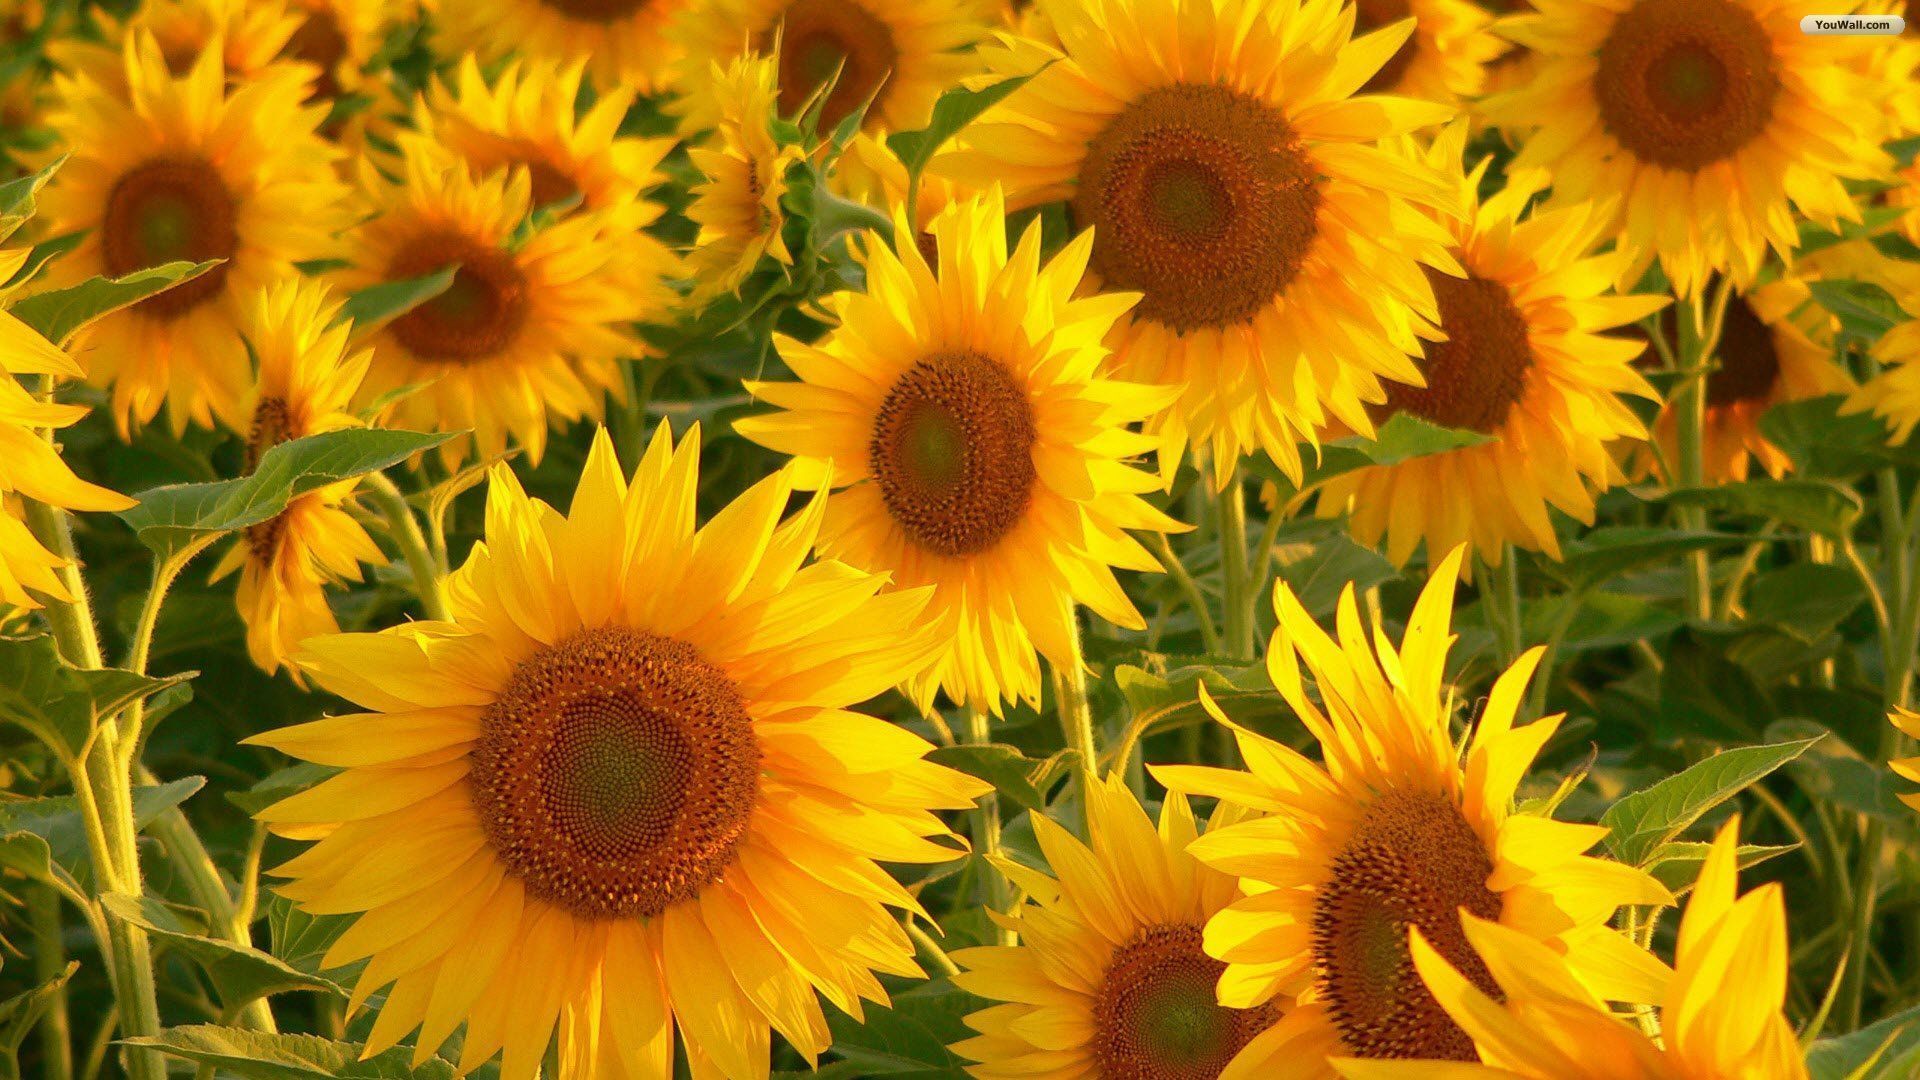 YouWall - Stunning Sunflowers Wallpaper - wallpaper,wallpapers